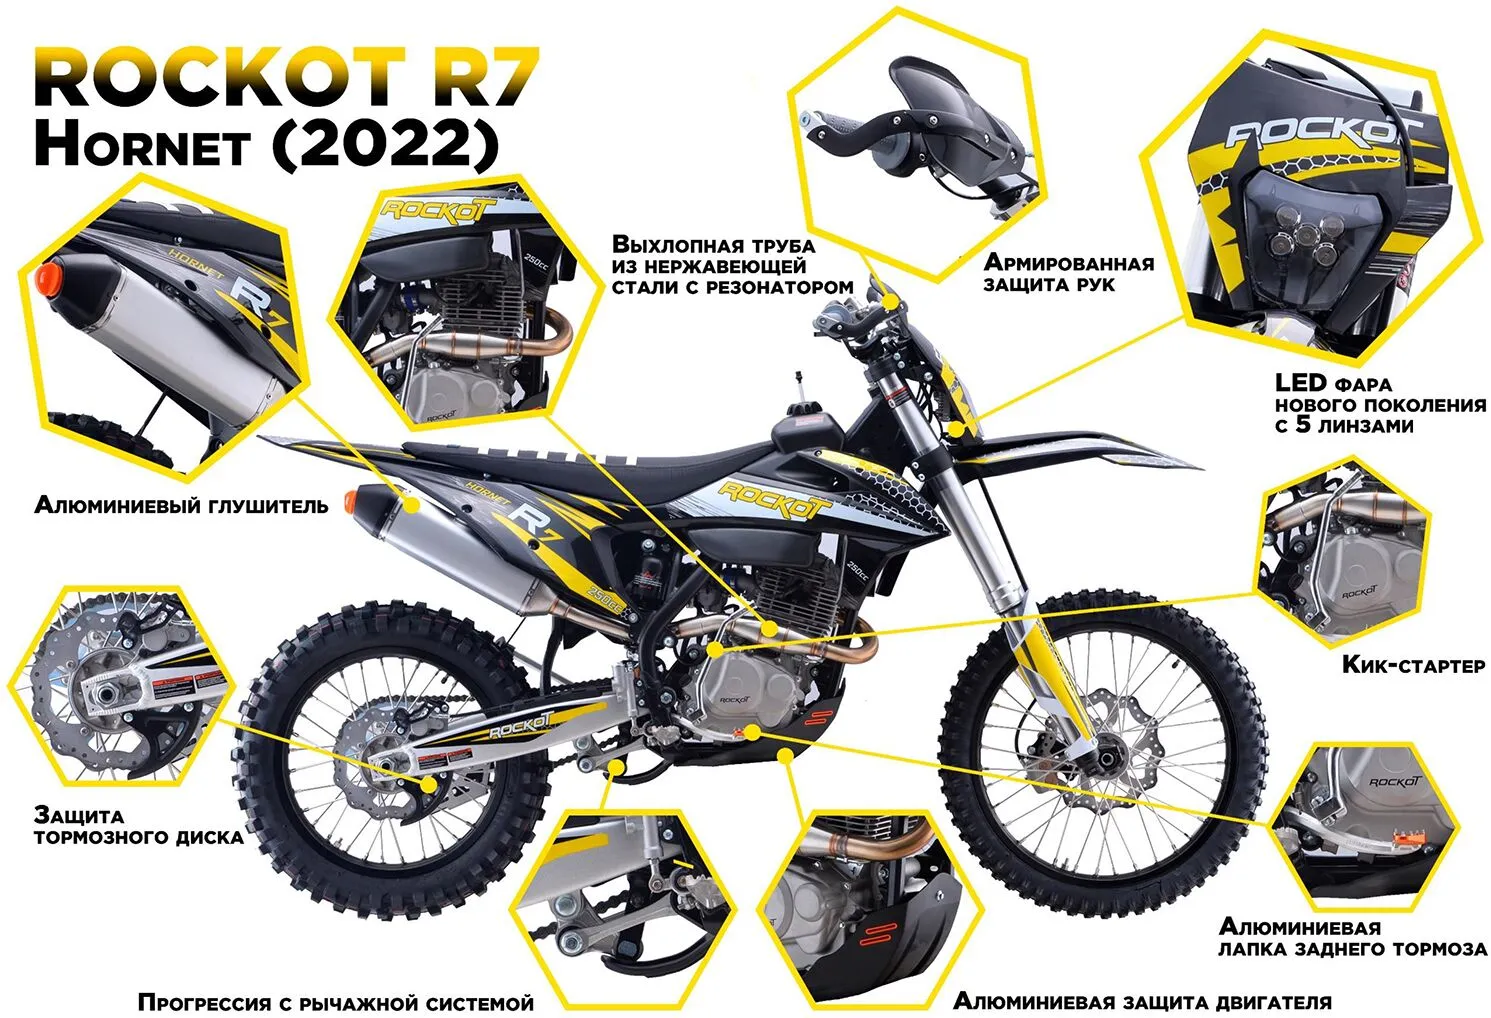 Мотоцикл кроссовый ROCKOT R7 Hornet 2022